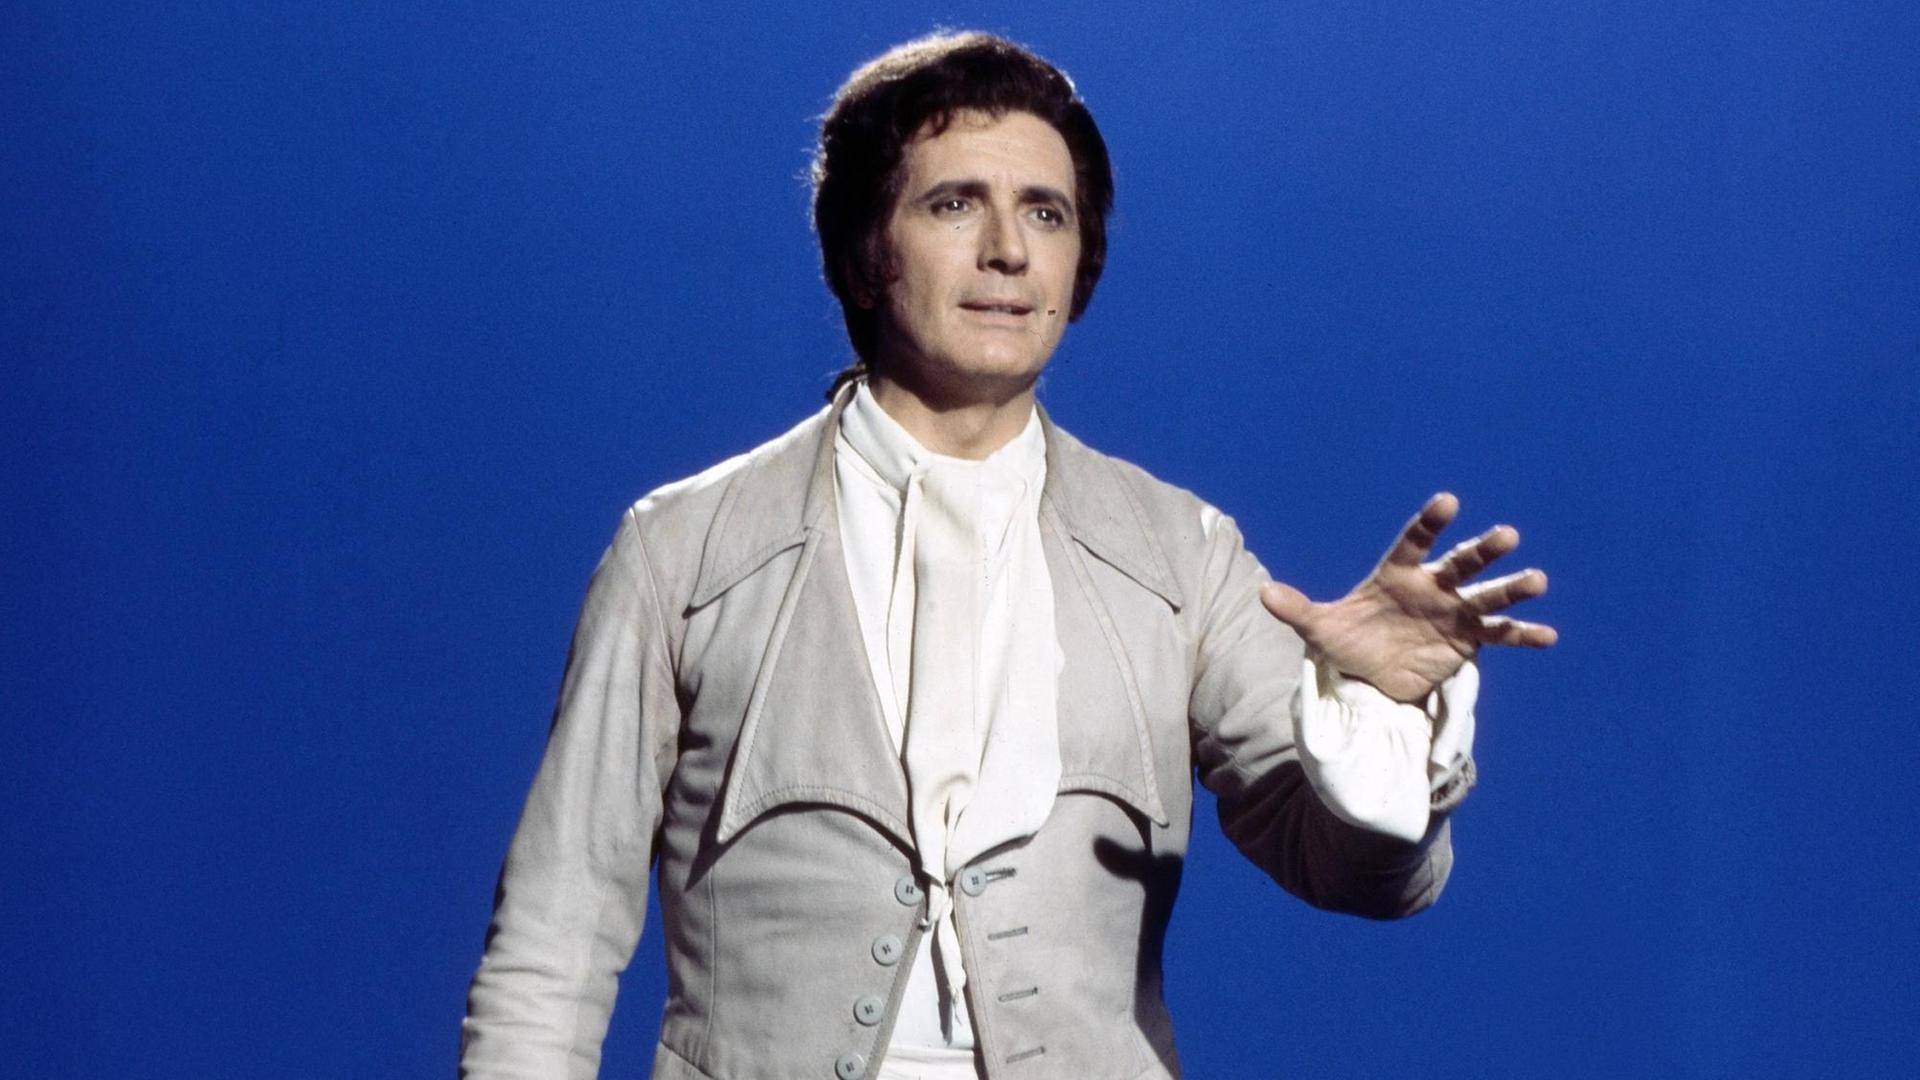 Der Sänger Franco Corelli steht vor einem mittelblauen Hintergrund, er trägt ein Kostüm im Stil des 18. Jahrhunderts, der linke Arm ist nach vorne ausgestreckt.